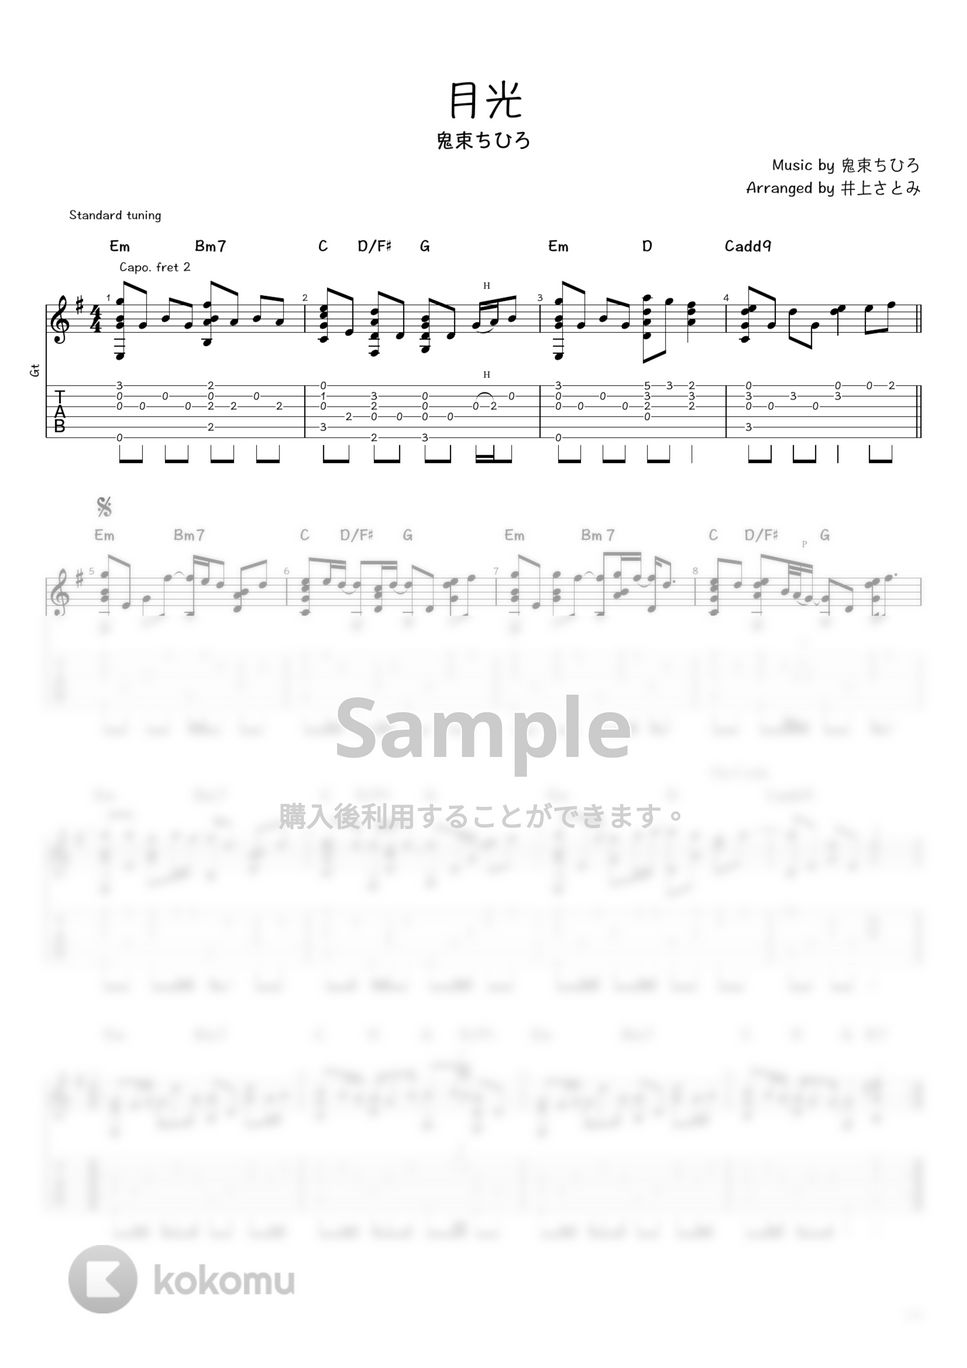 鬼束ちひろ - 月光 (ソロギター / タブ譜) by 井上さとみ